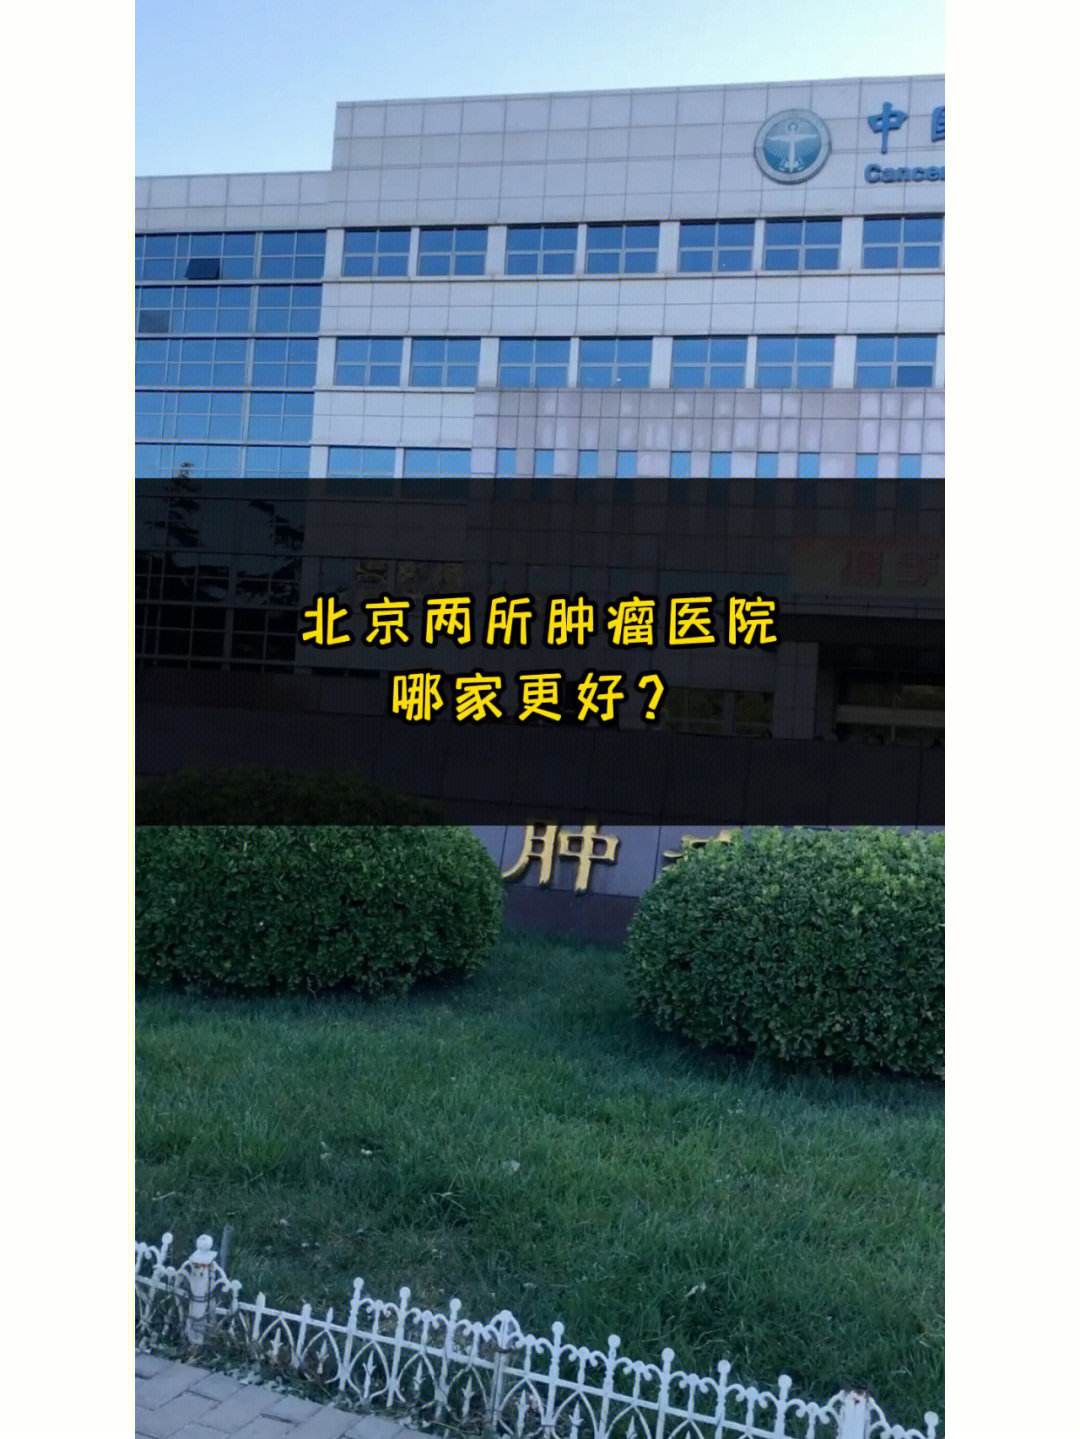 中国医学科学院肿瘤医院客服电话	中国医学科学院肿瘤医院客服电话号码